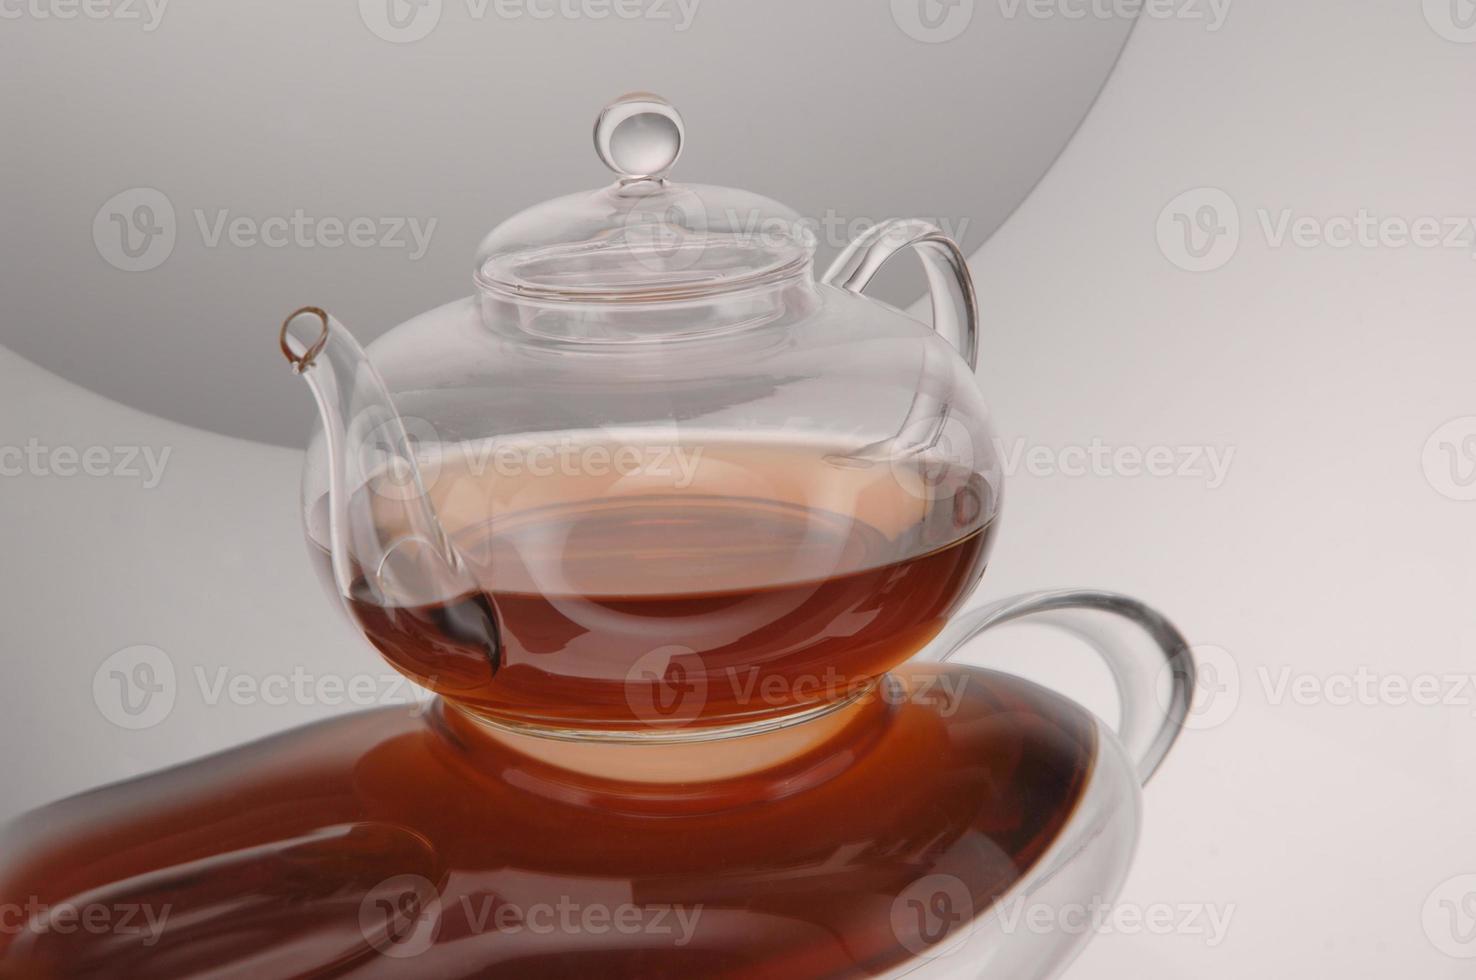 Teekanne aus transparentem Glas und Tasse mit Tee foto